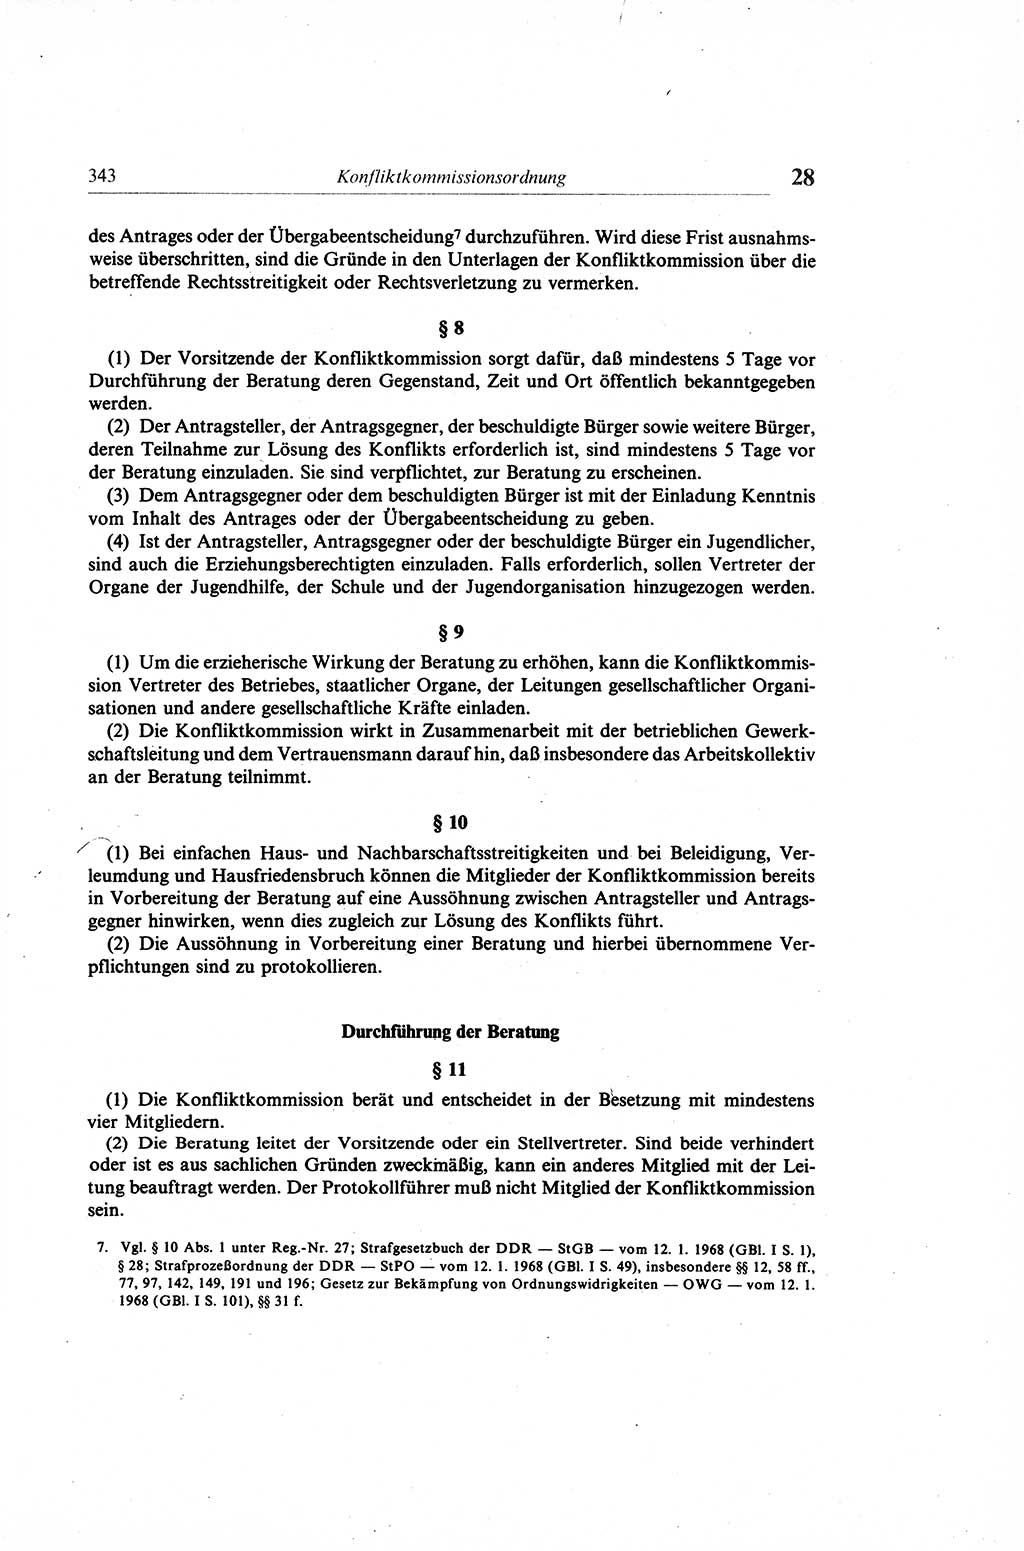 Gesetzbuch der Arbeit (GBA) und andere ausgewählte rechtliche Bestimmungen [Deutsche Demokratische Republik (DDR)] 1968, Seite 343 (GBA DDR 1968, S. 343)